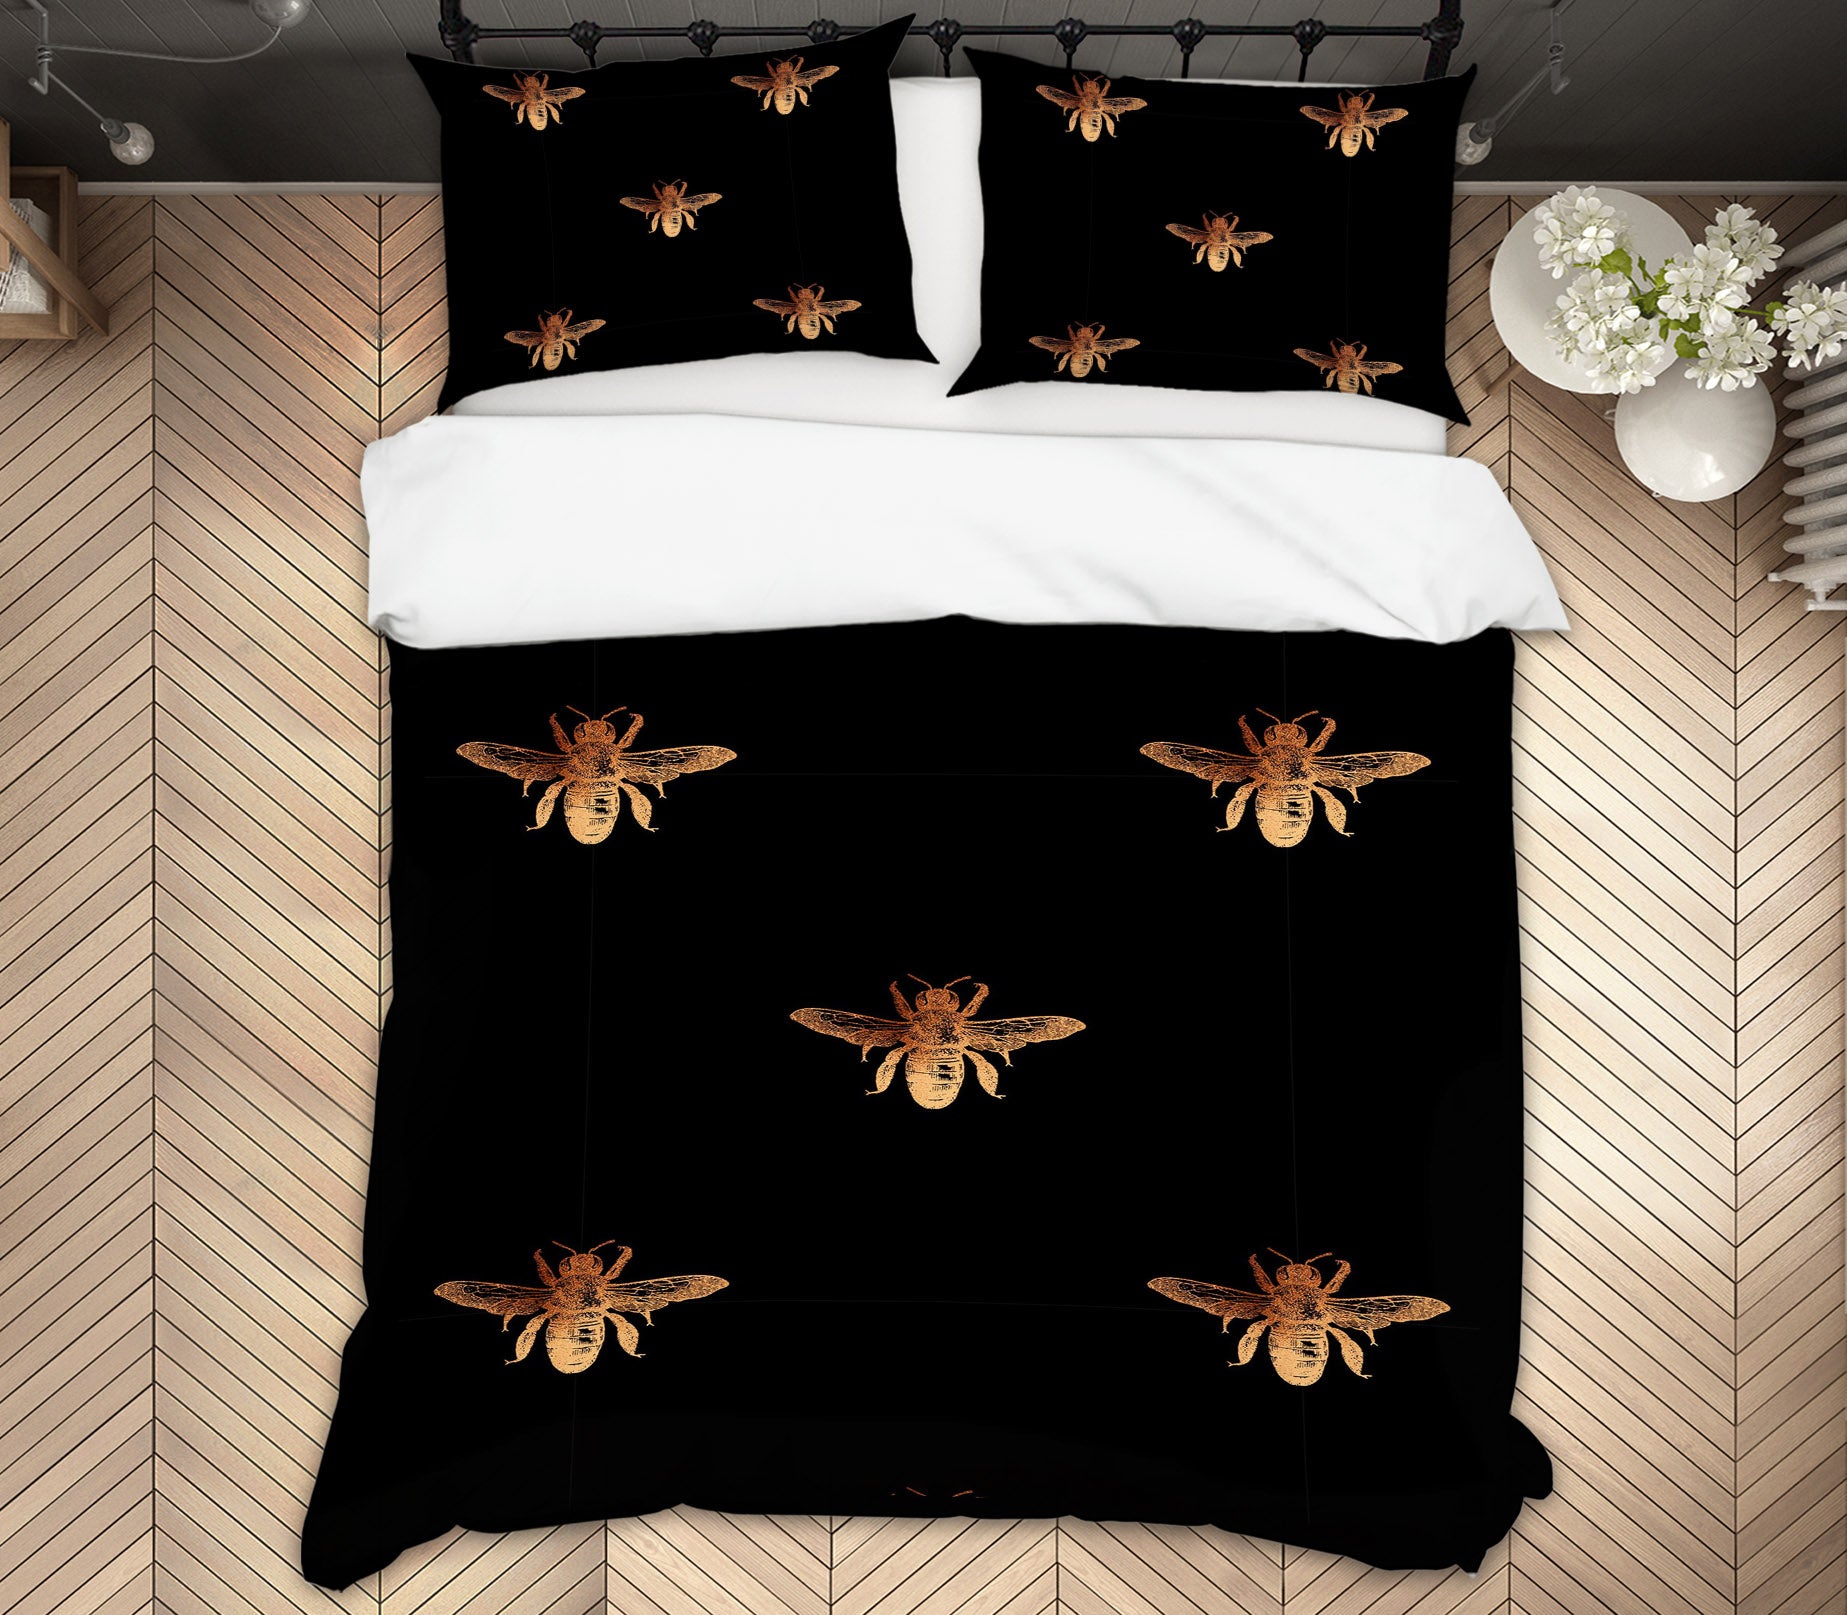 3D Golden Insect 139 Uta Naumann Bedding Bed Pillowcases Quilt